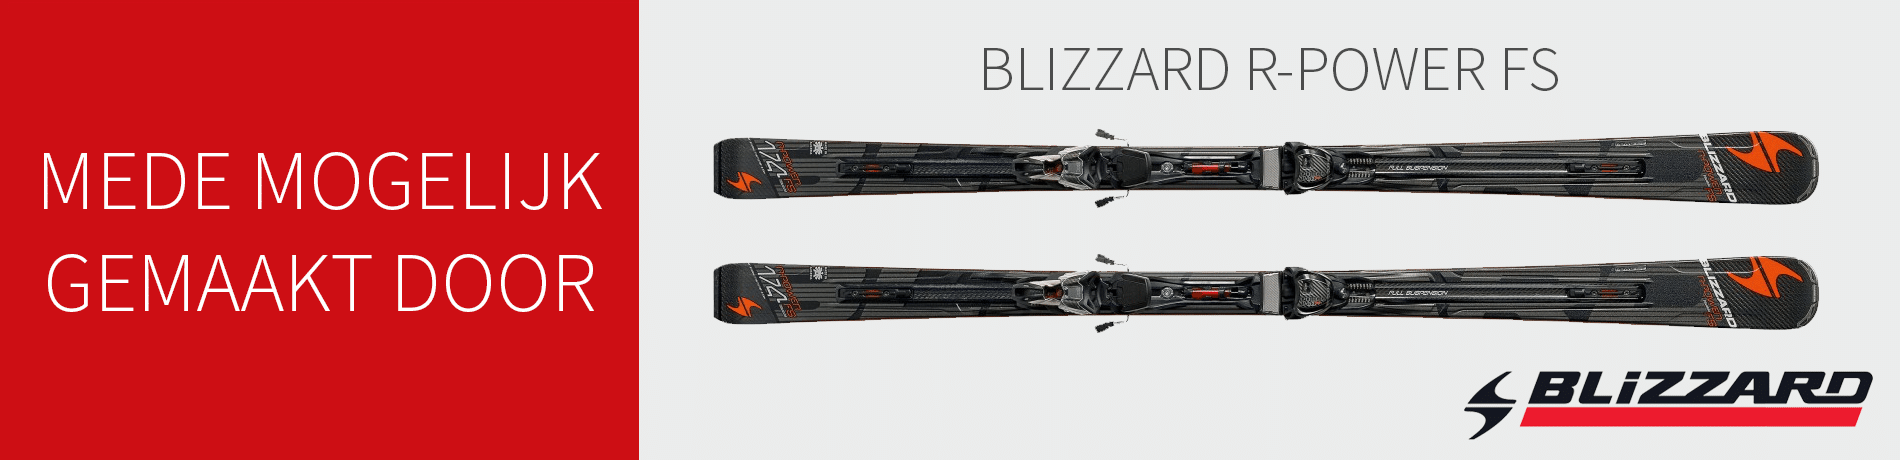 Blizzard advertentie